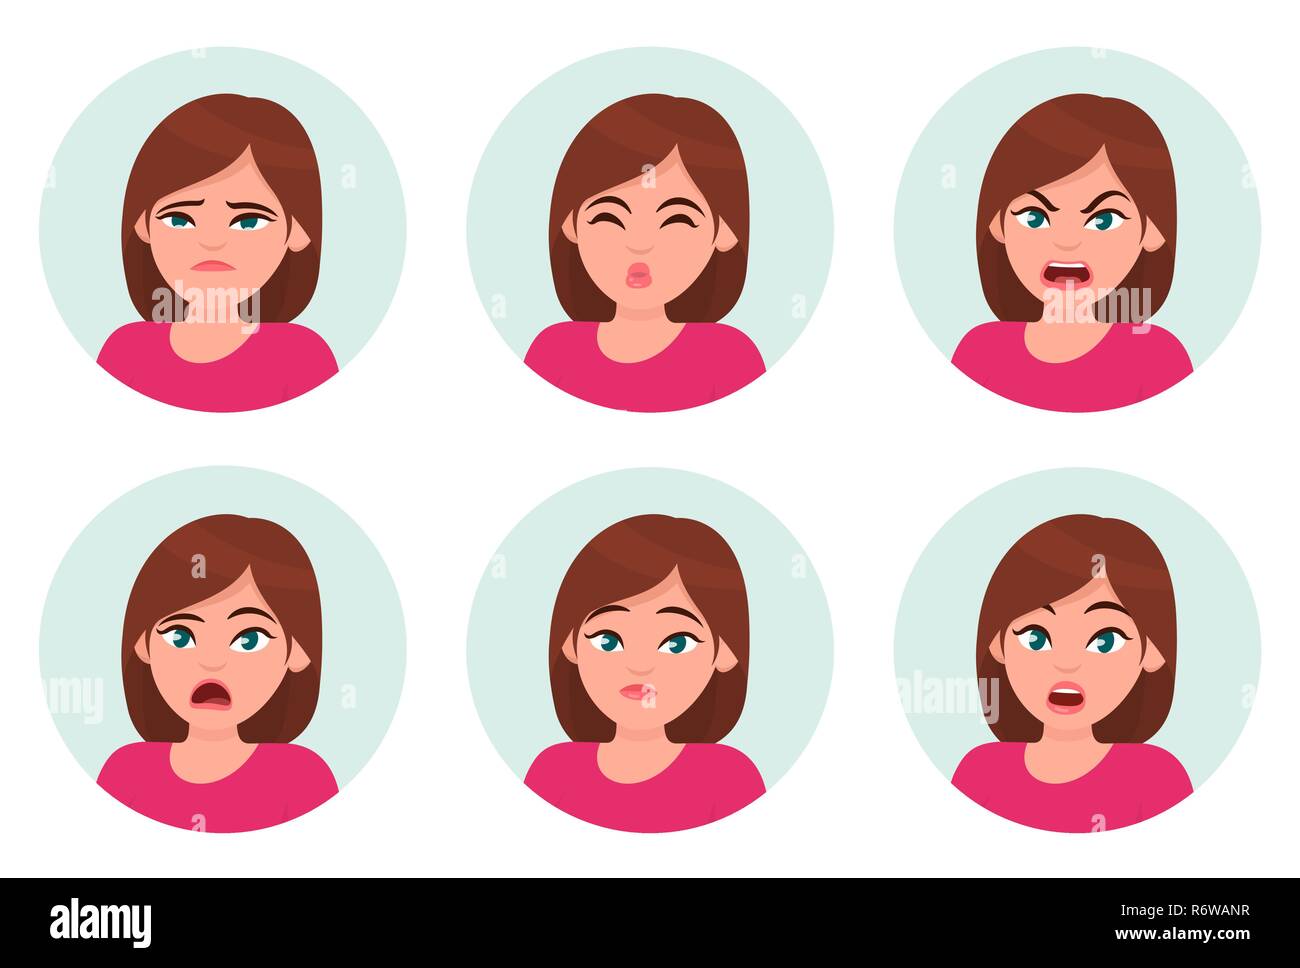 Satz von Mädchen/Frau gesichts Emotionen. Verschiedene weibliche Emotionen gesetzt. Frau Emoji-zeichen mit unterschiedlichen Ausdrücken. Vector Illustration. Stock Vektor